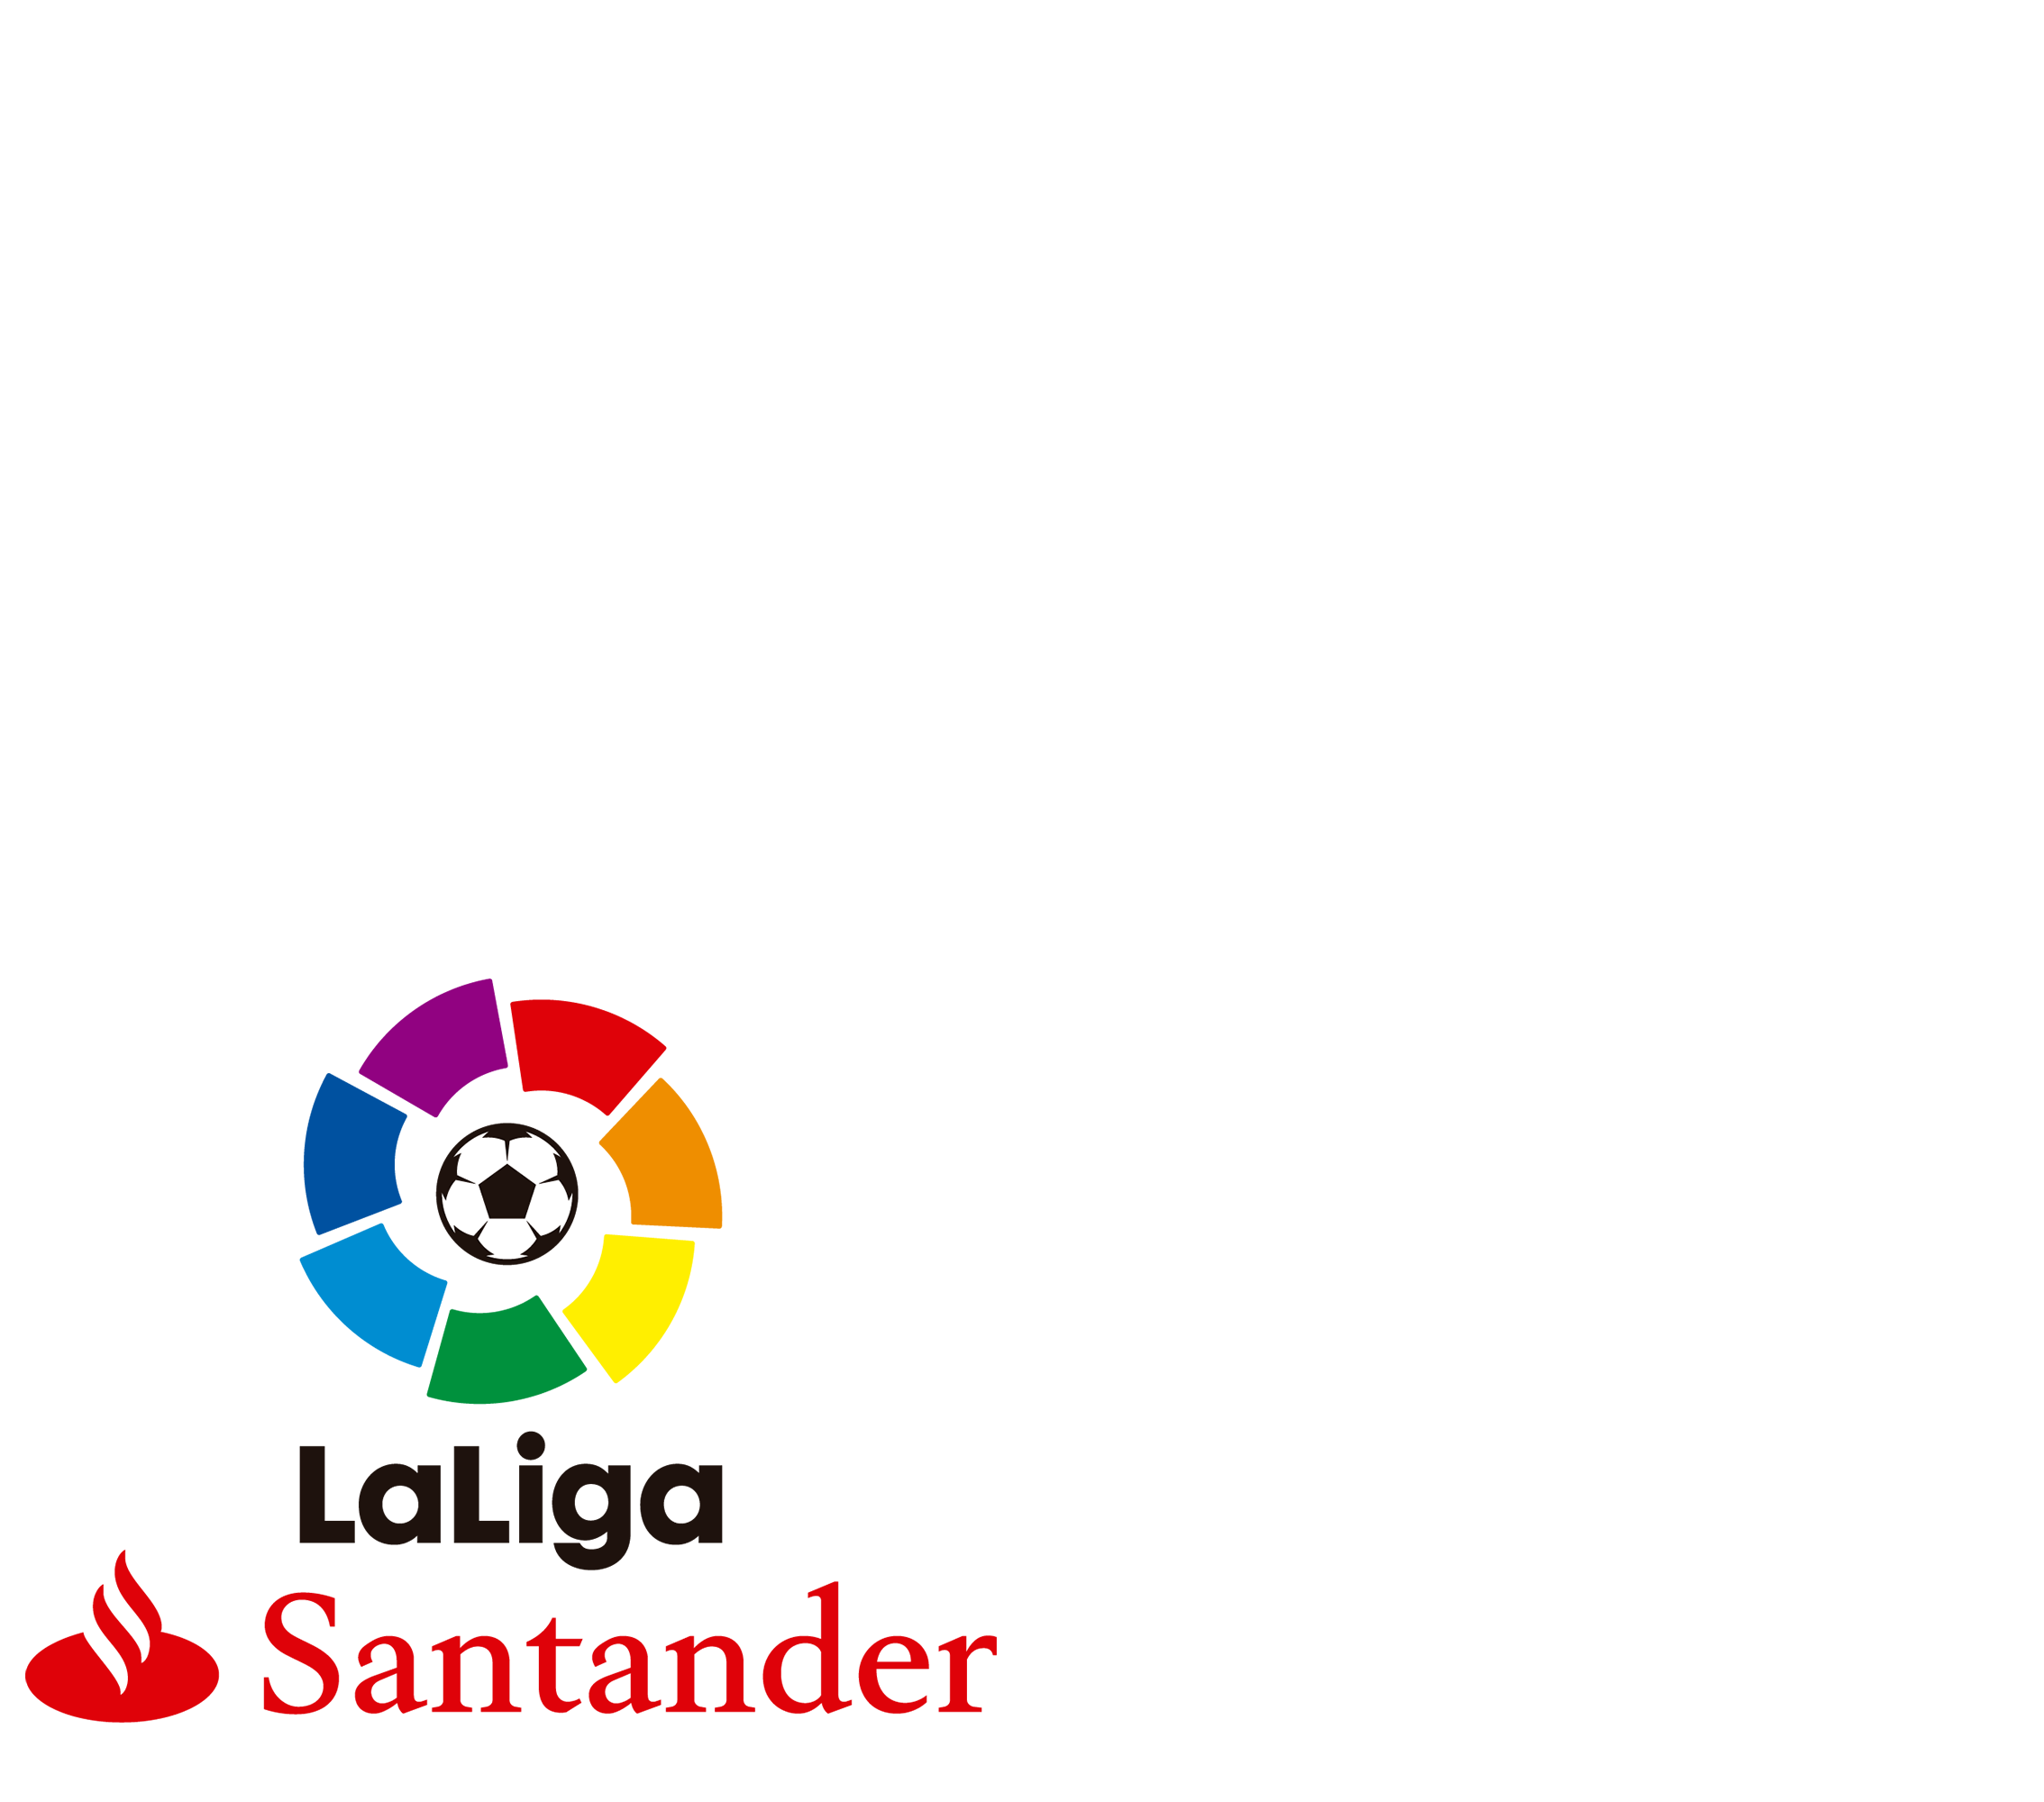 LaLliga Santander 2017/18